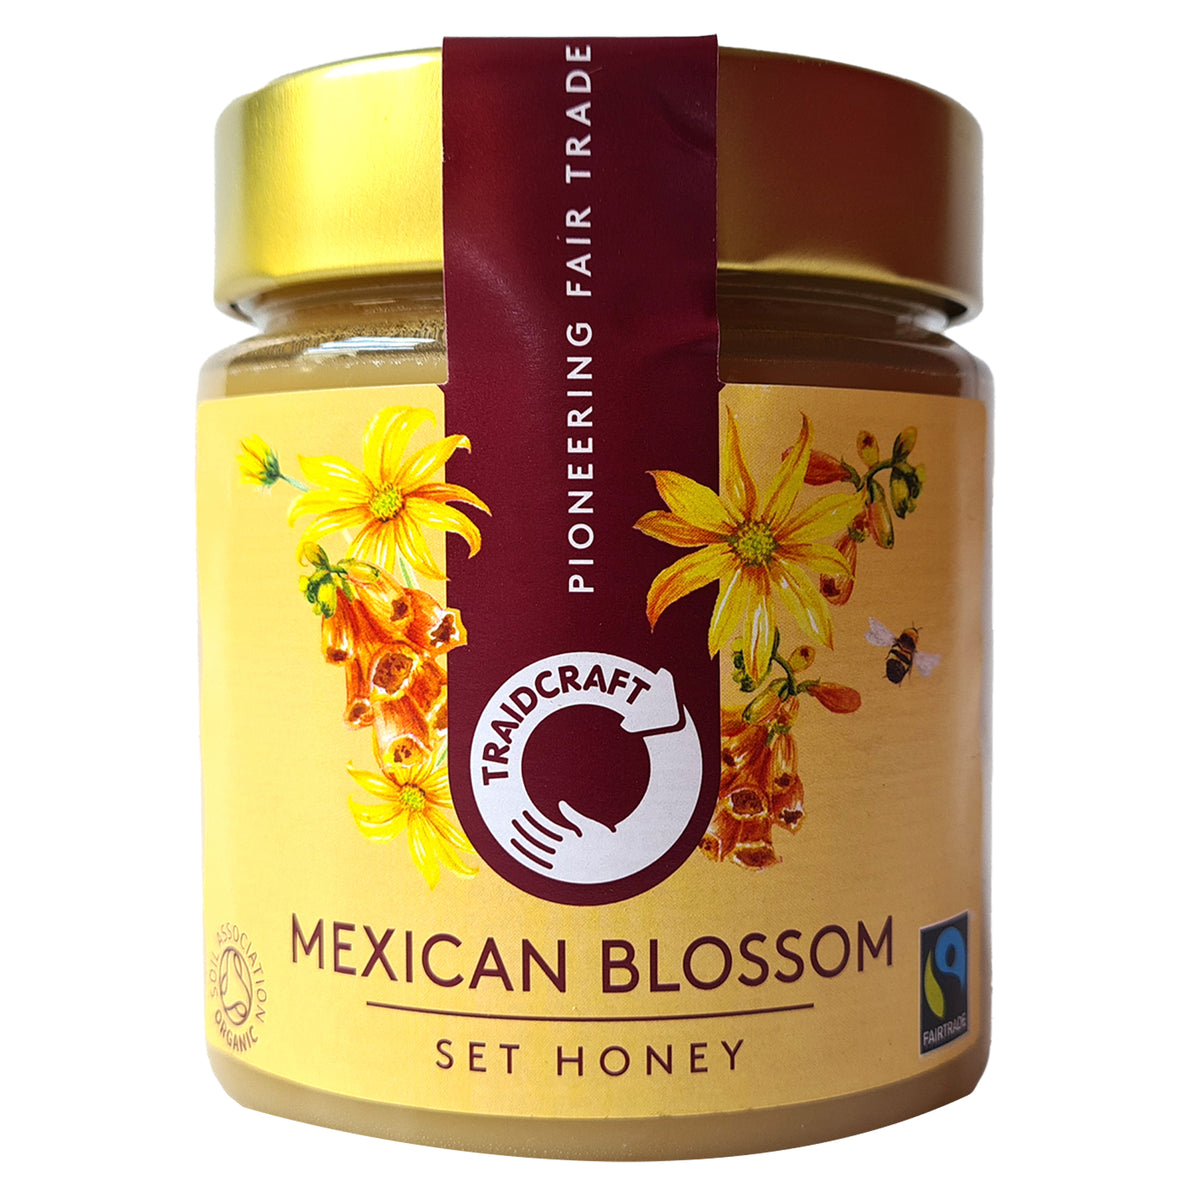 Traidcraft Fairtrade Organic Mexican Blossom Set Honey 500g